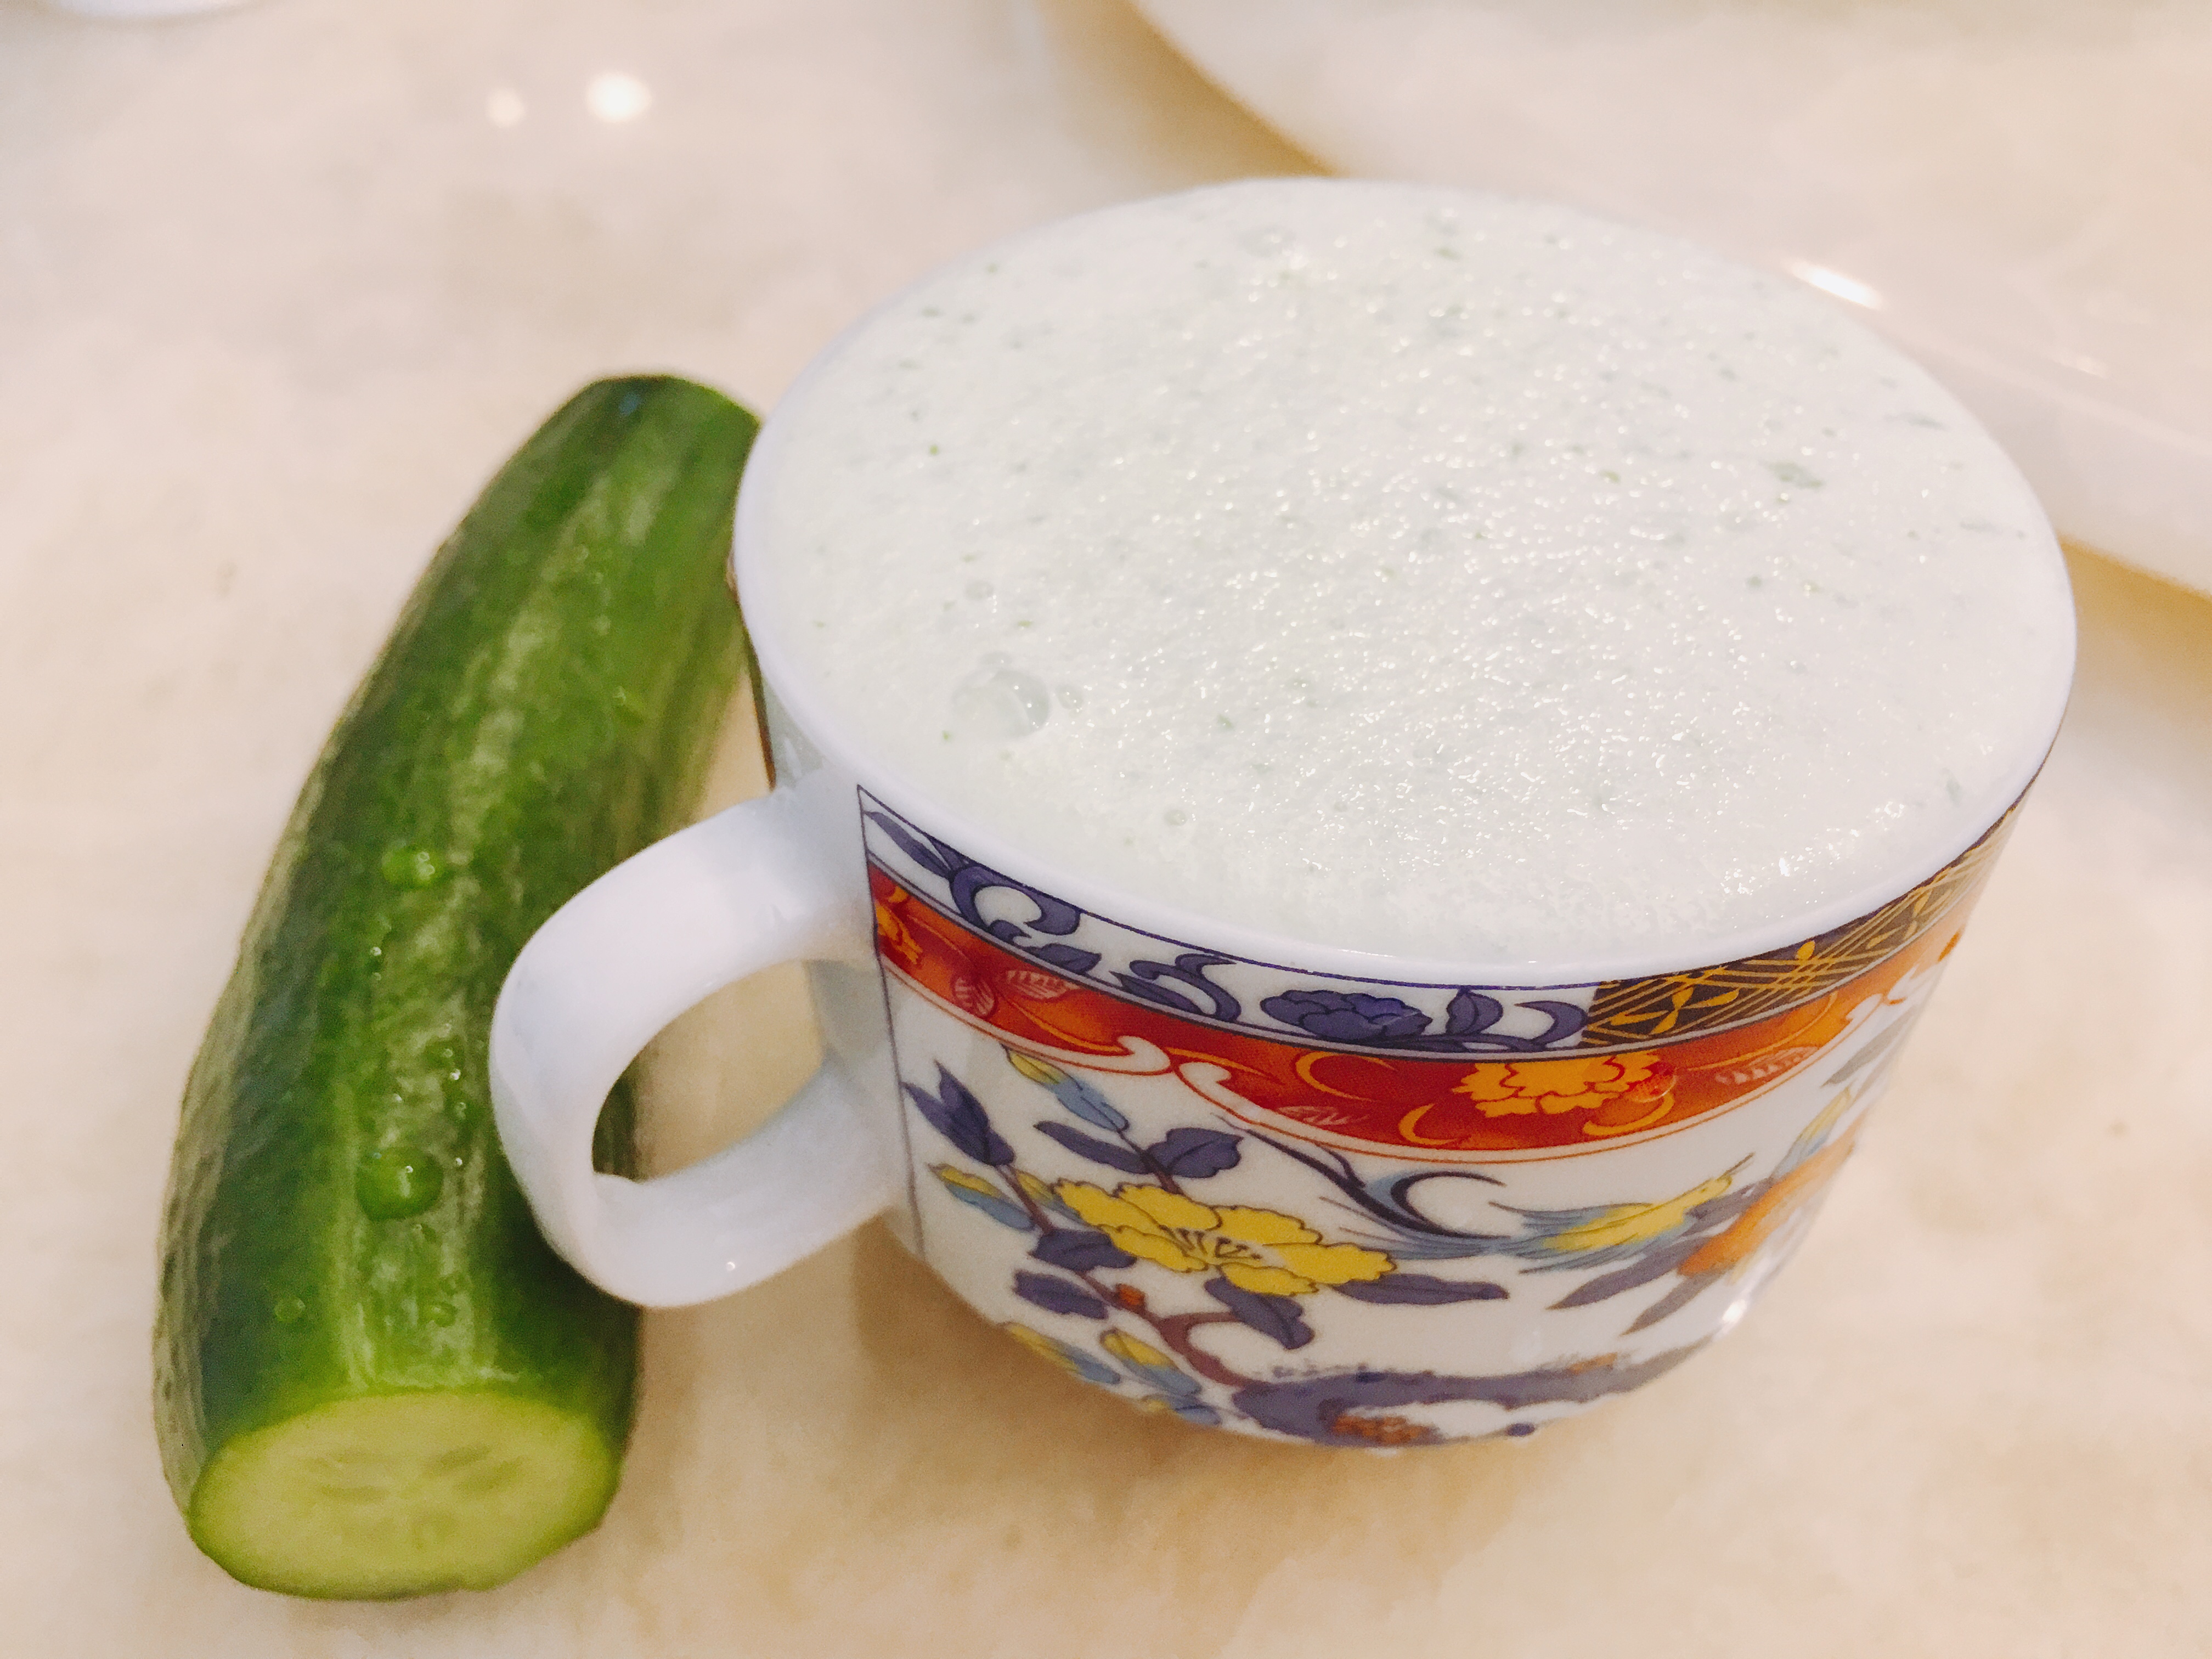 青瓜奶昔 - Cucumber milkshake